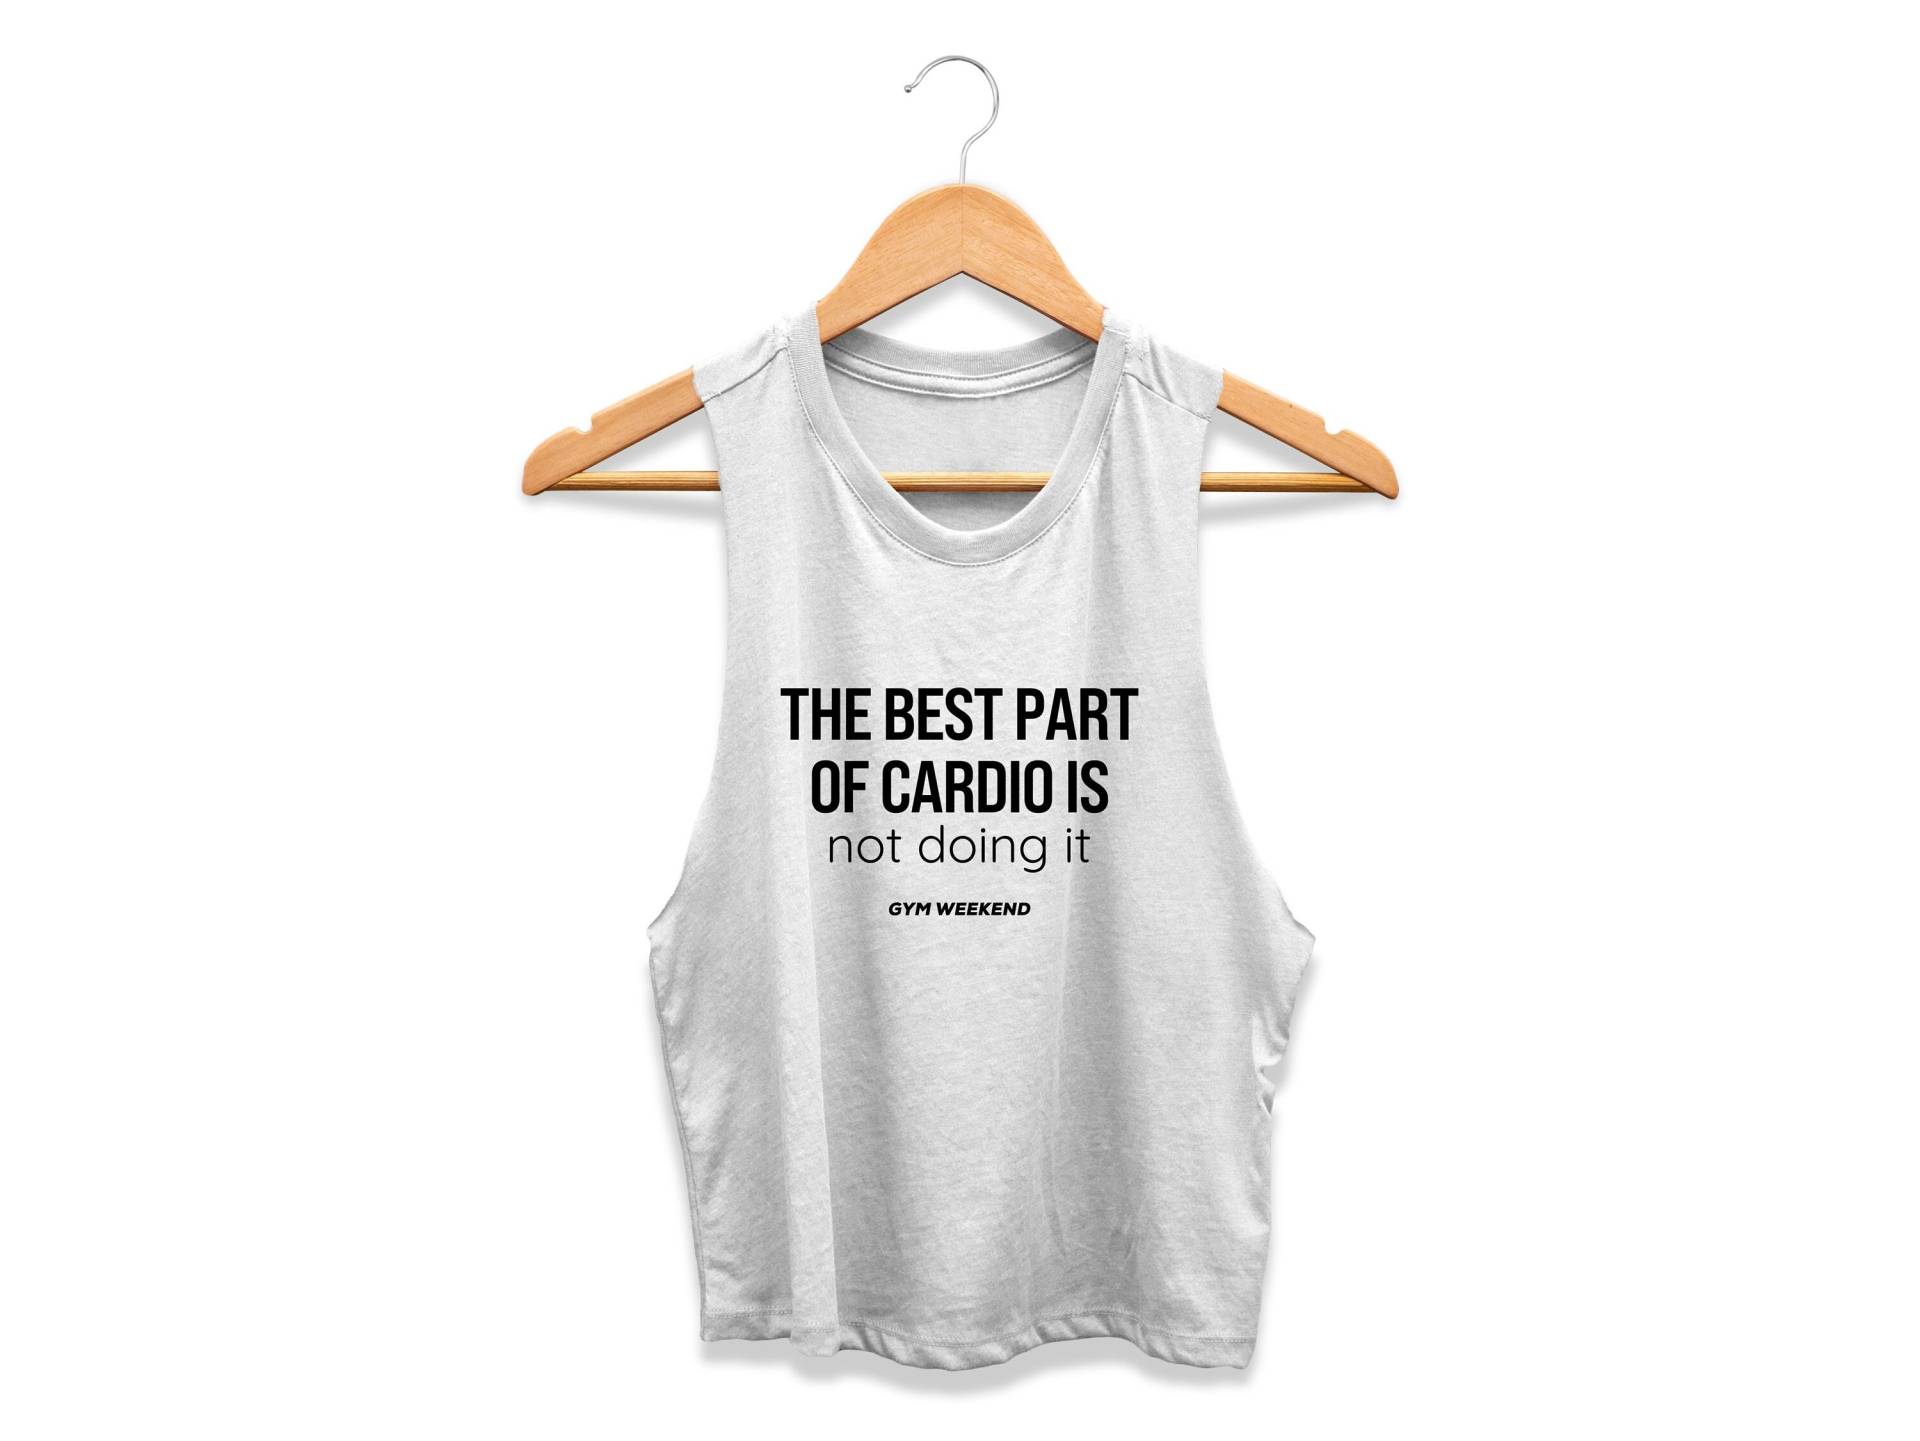 Cardio-Shirt | Hebe Tank Top Ausgeführt Yoga-Shirt Bein-Tag-Shirt Der Beste Teil Von Cardio Ist, Es Nicht Zu Tun von GymWeekendApparel